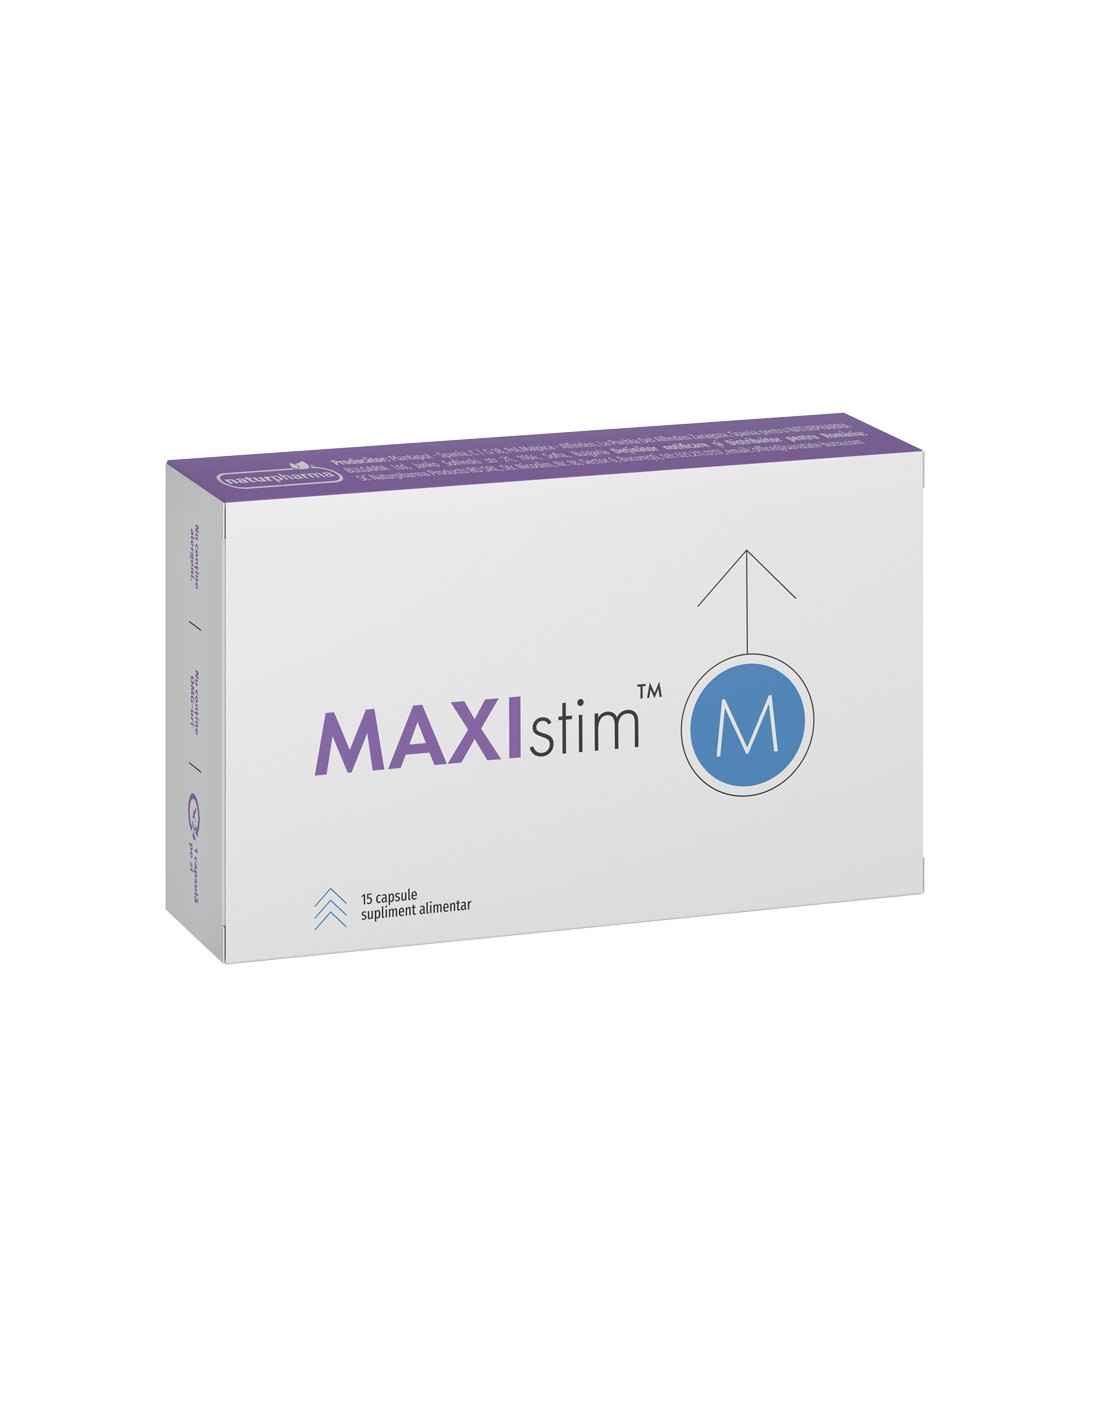 Tonice sexuale - Maxistim M 15 capsule, farmacieieftina.ro